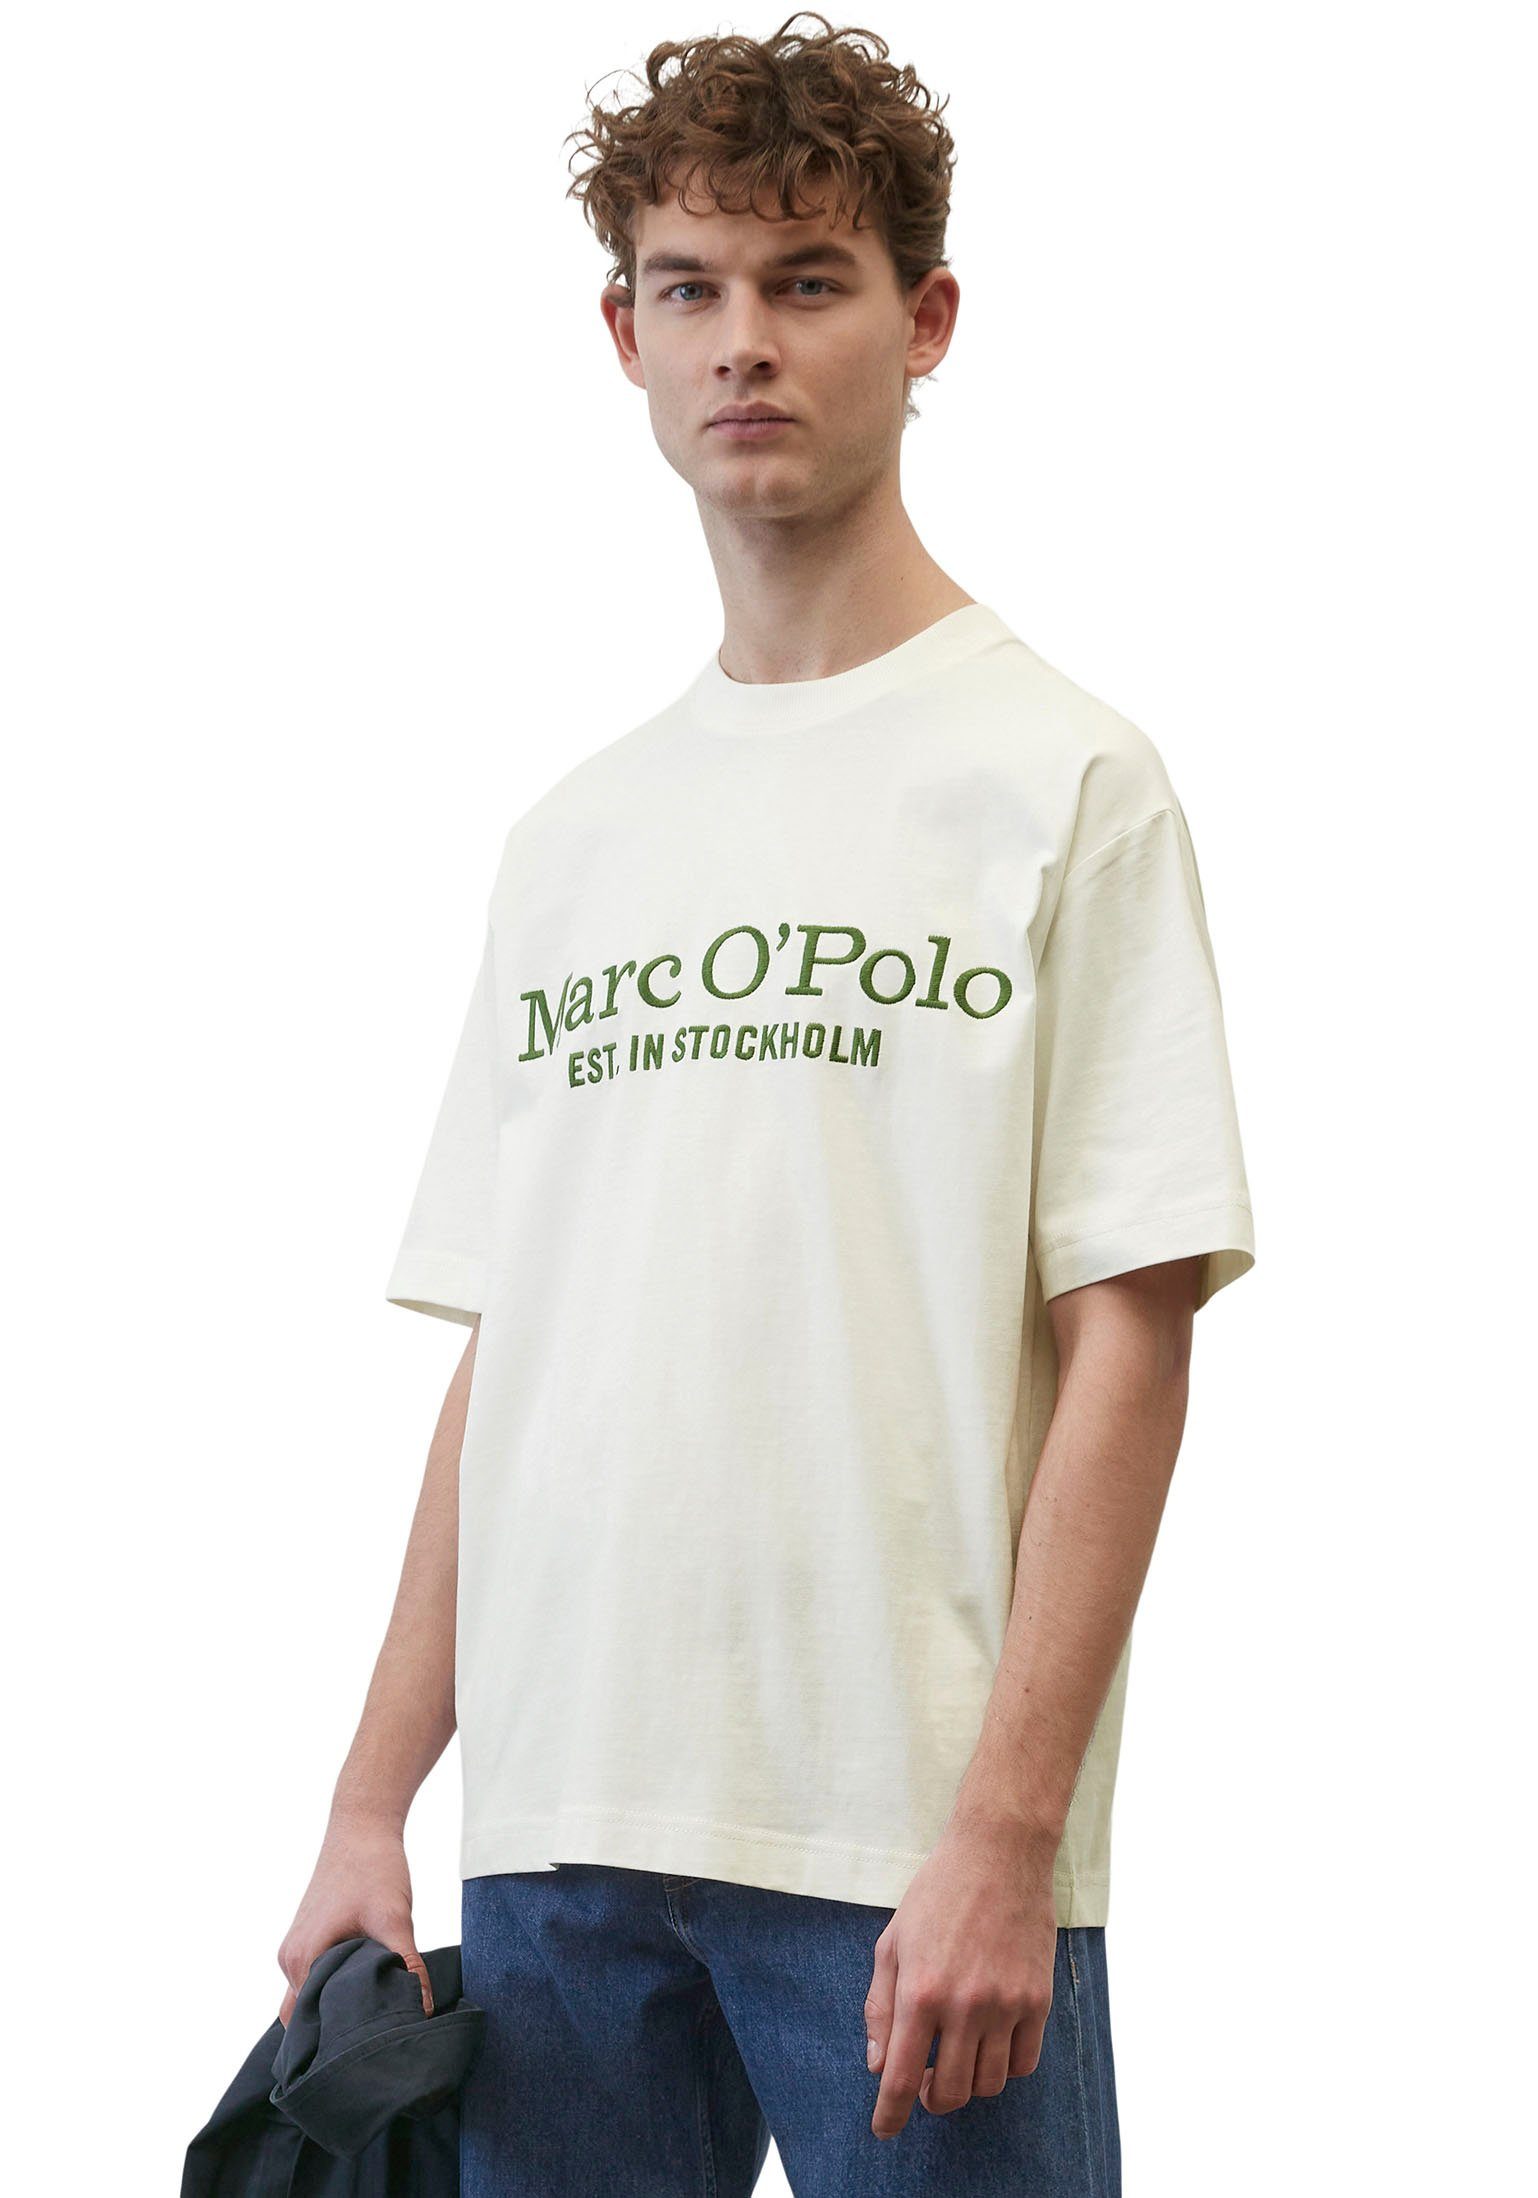 Label-Stickerei mit Marc O'Polo großer vorne T-Shirt weiß